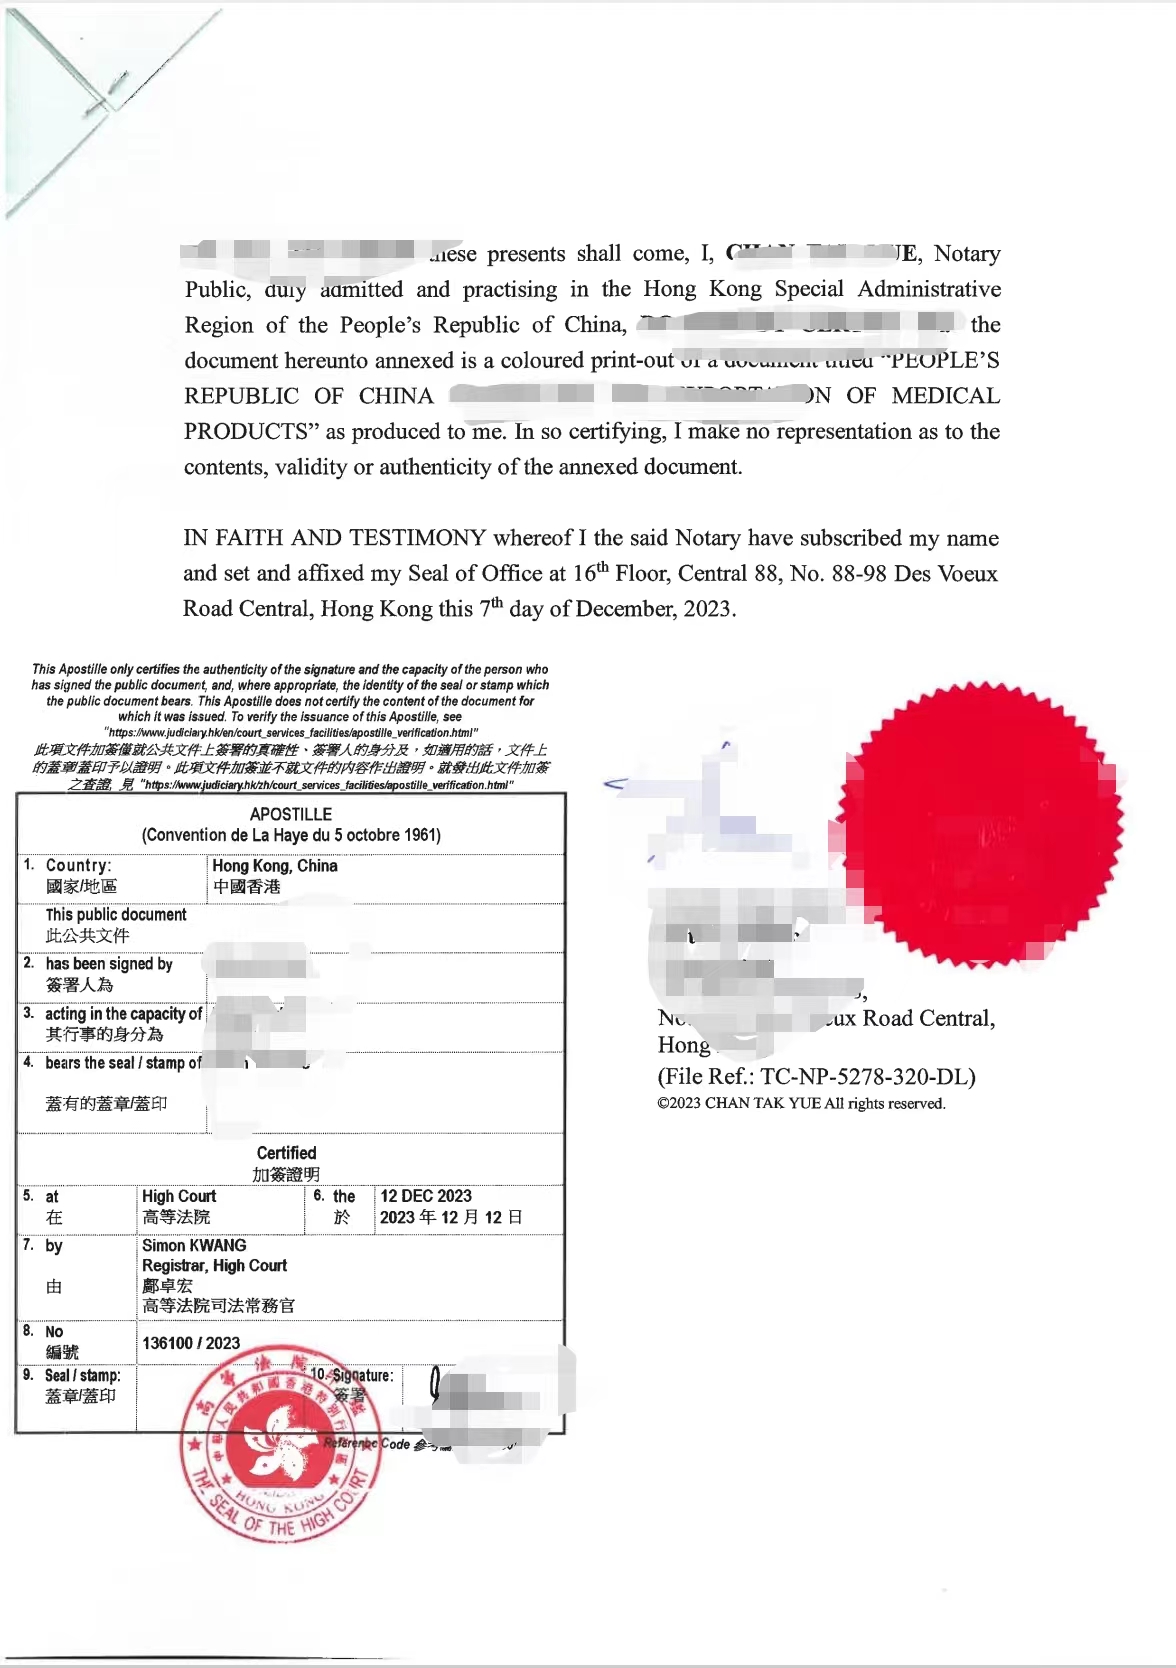 公司更名文件海牙认证 一站式服务 昆明个人专利